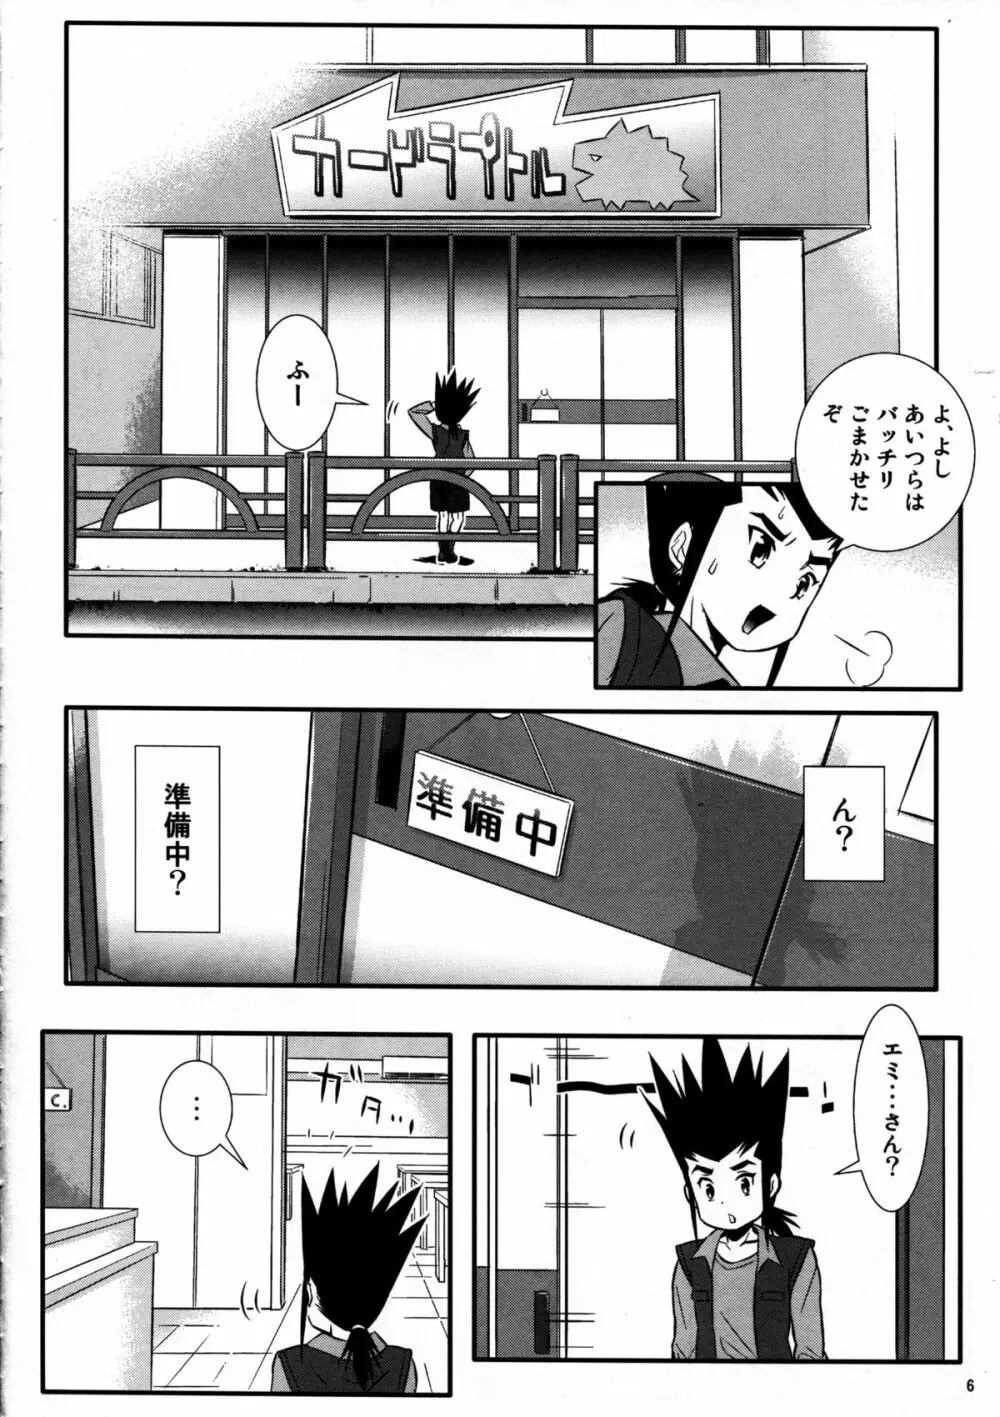 カムイとライド! - page6